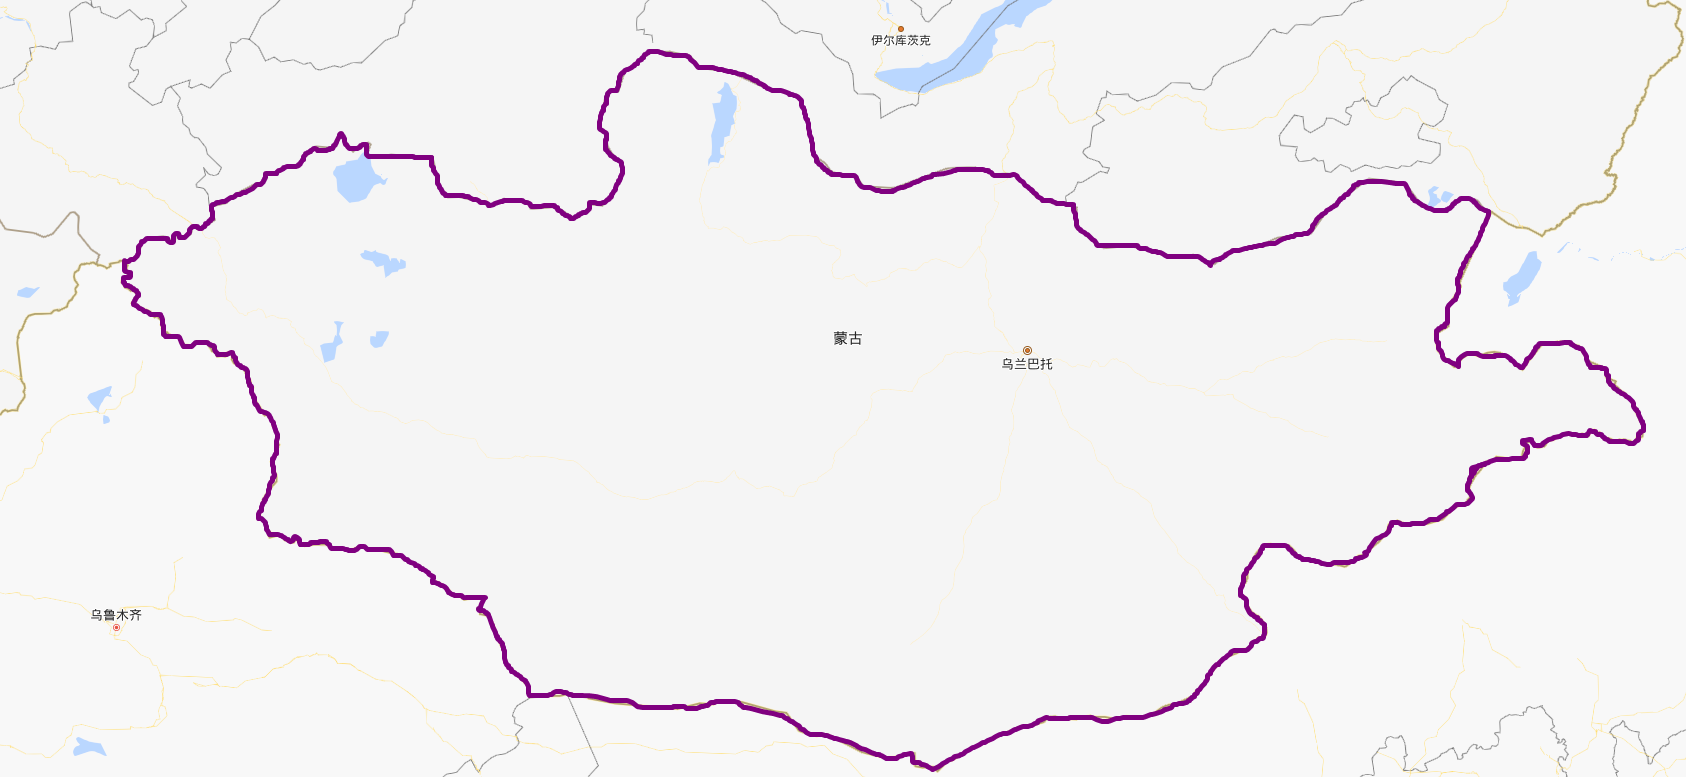 蒙古,全称蒙古国,首都乌兰巴托,位于东亚(或者属于北亚的唯一一个国家